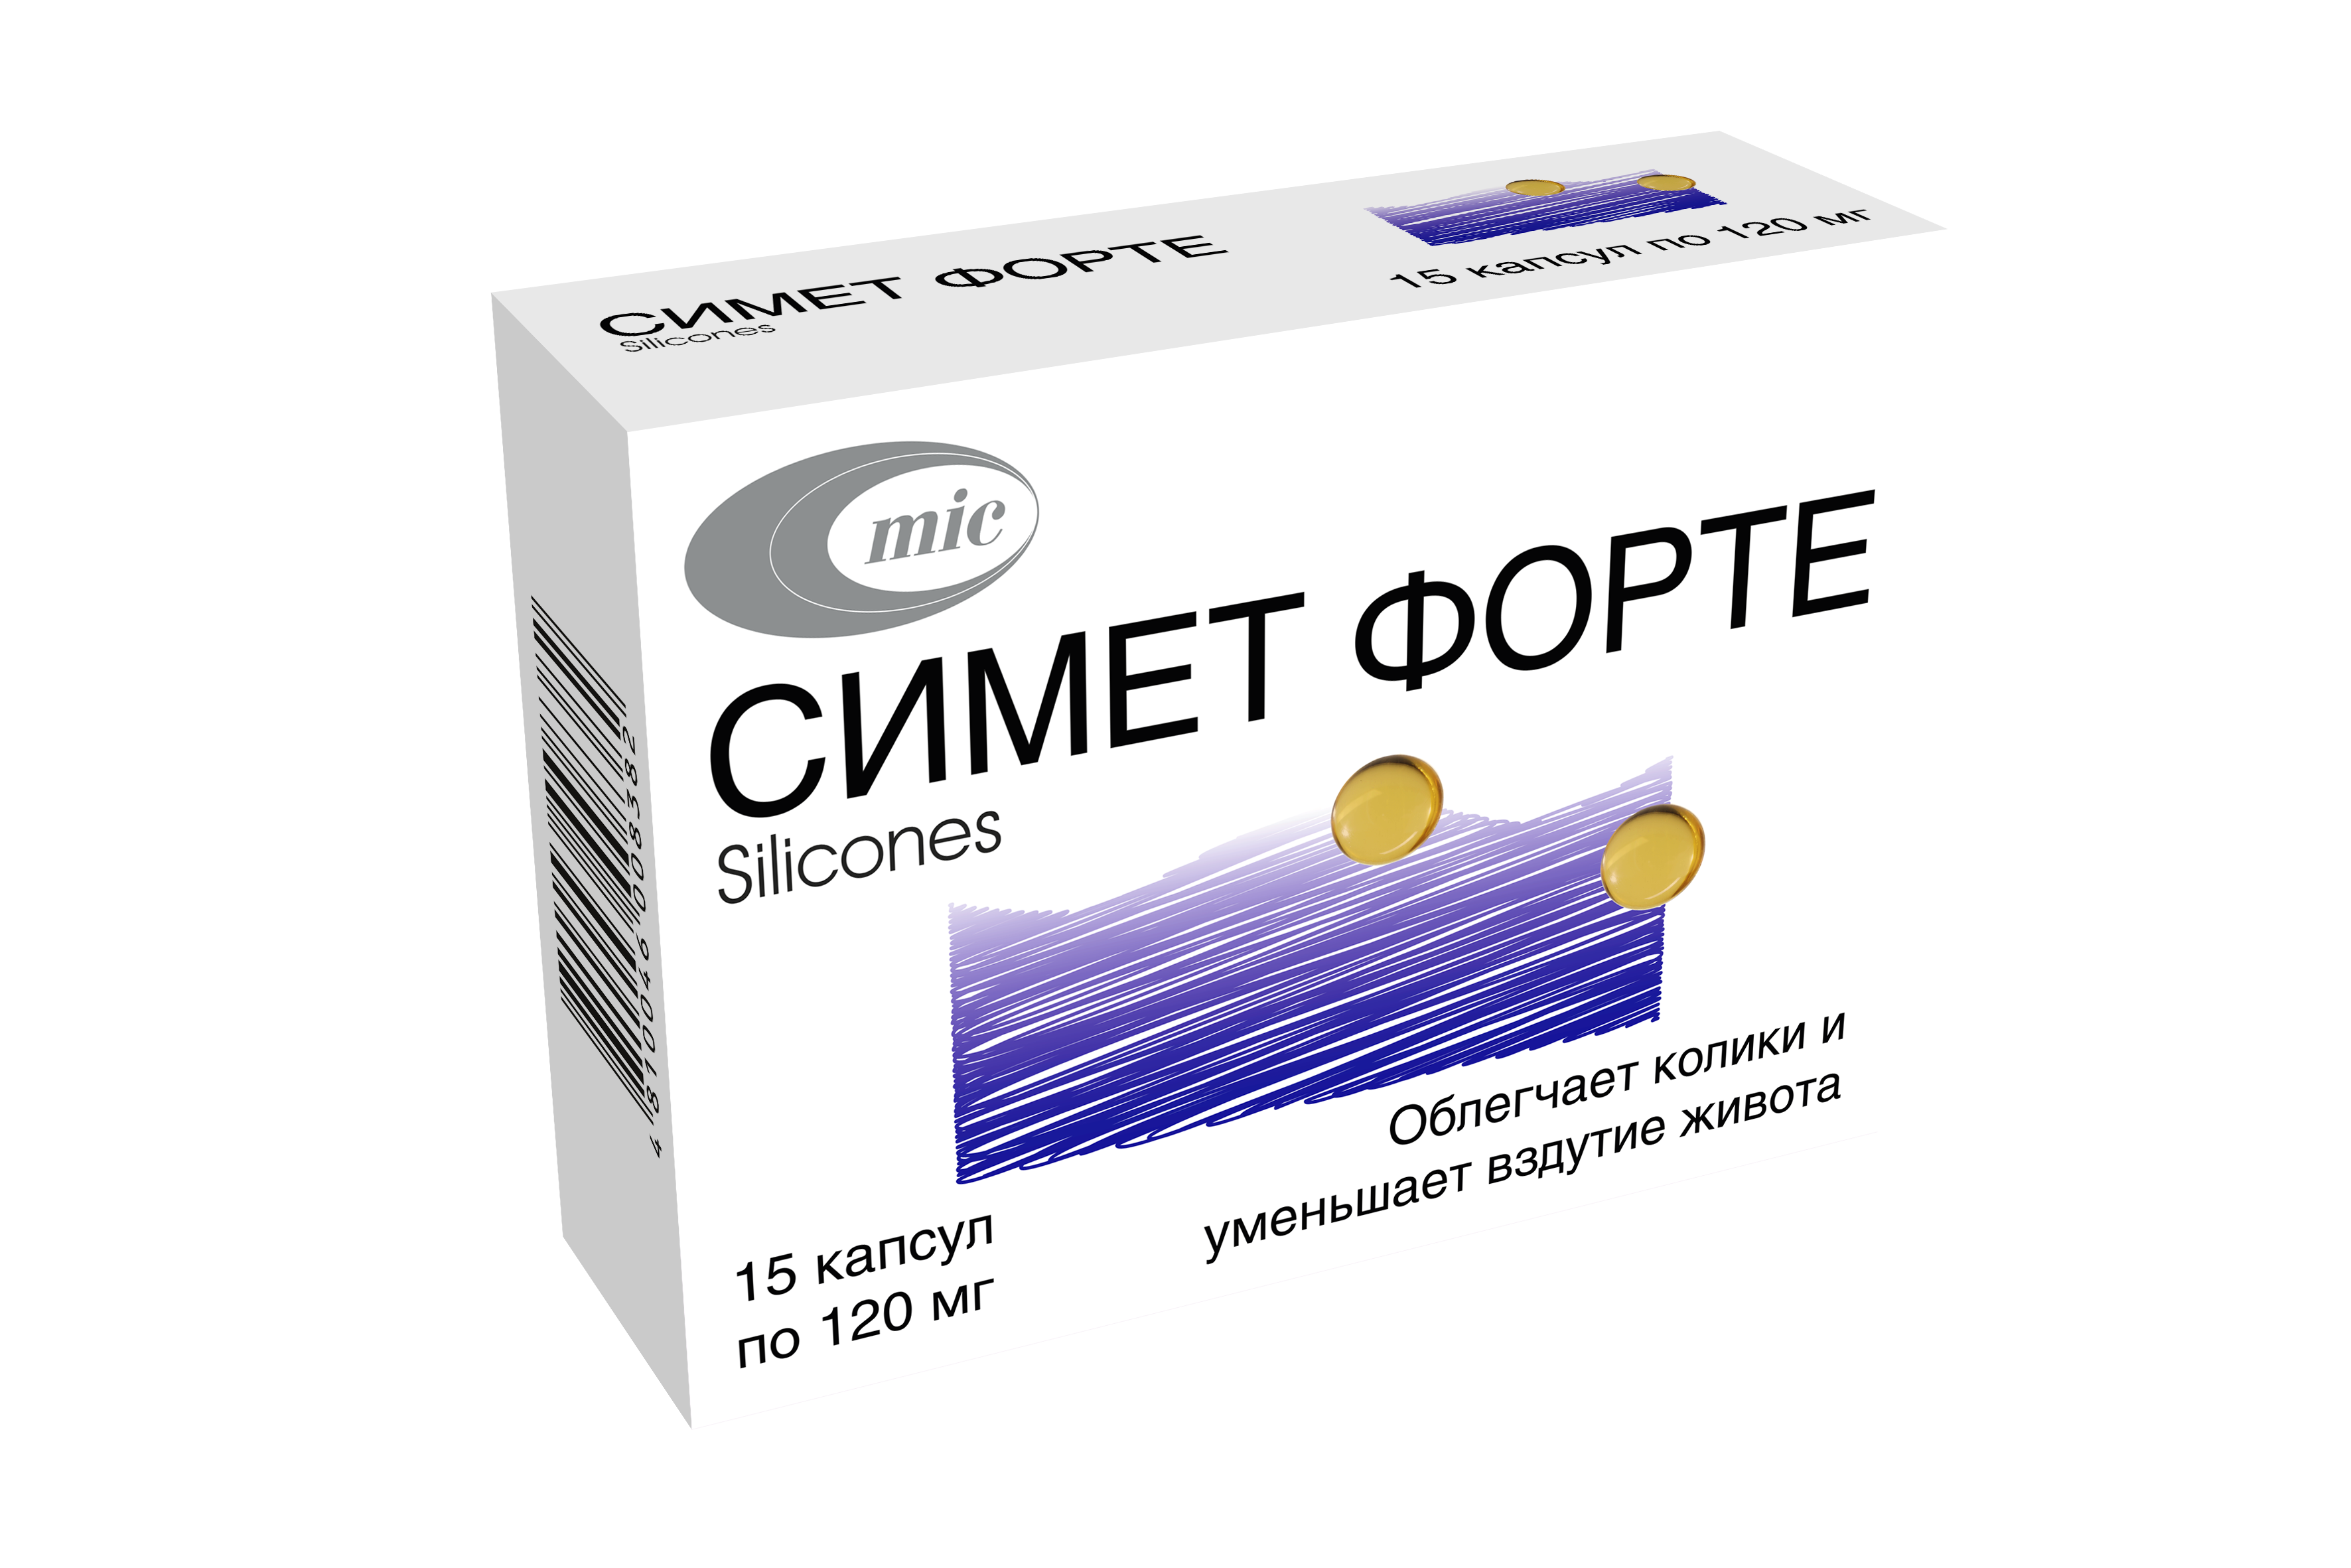 Зарегистрировано новое лекарственное средство СИМЕТ ФОРТЕ, капсулы 120 мг №15